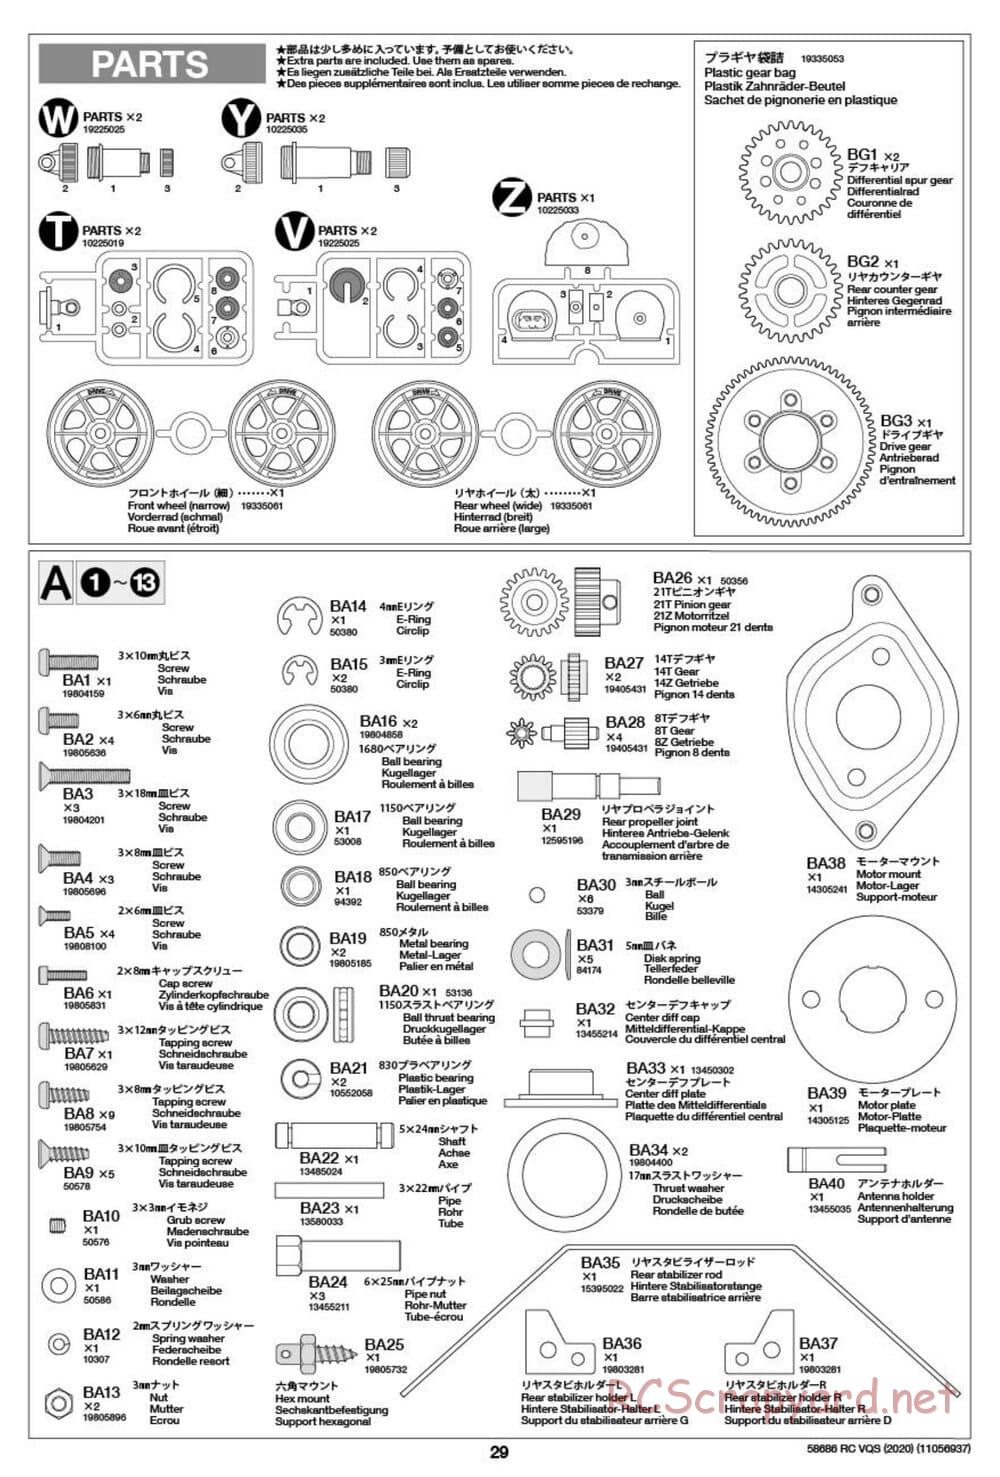 Tamiya - VQS (2020) - AV Chassis - Manual - Page 29